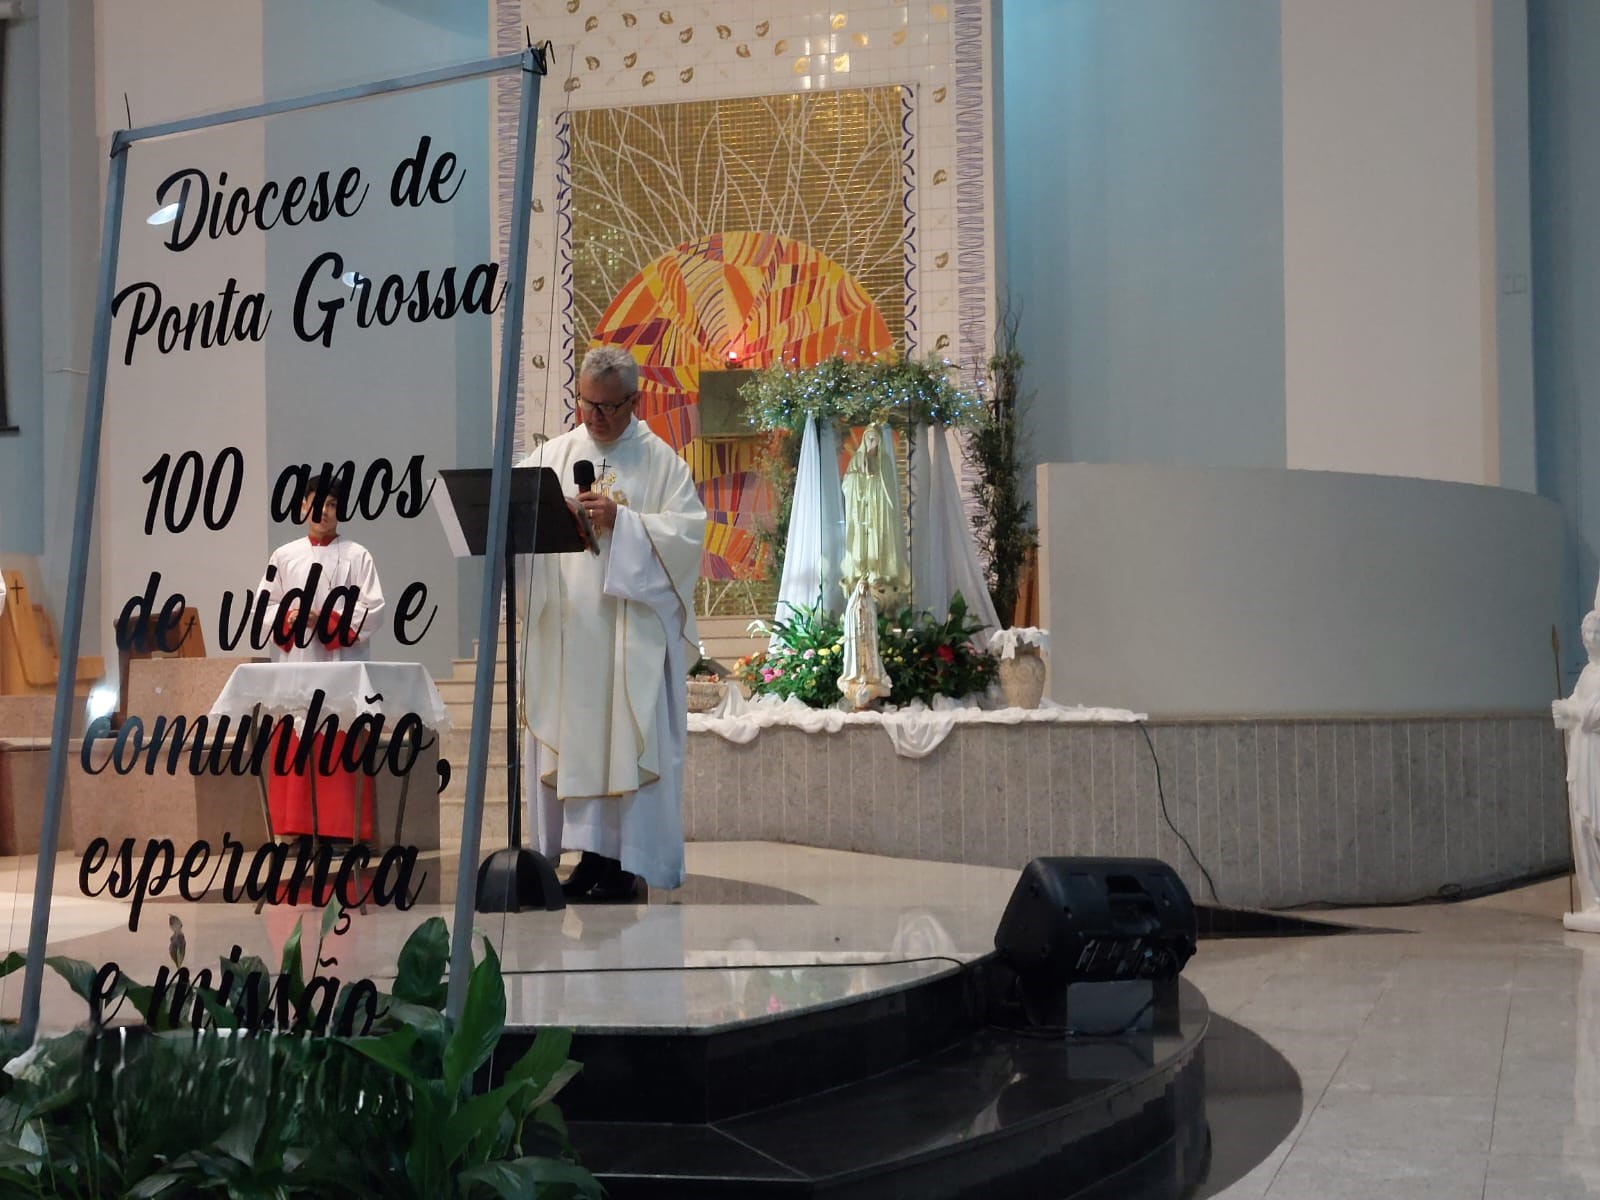 Foto: Diocese de Ponta Grossa